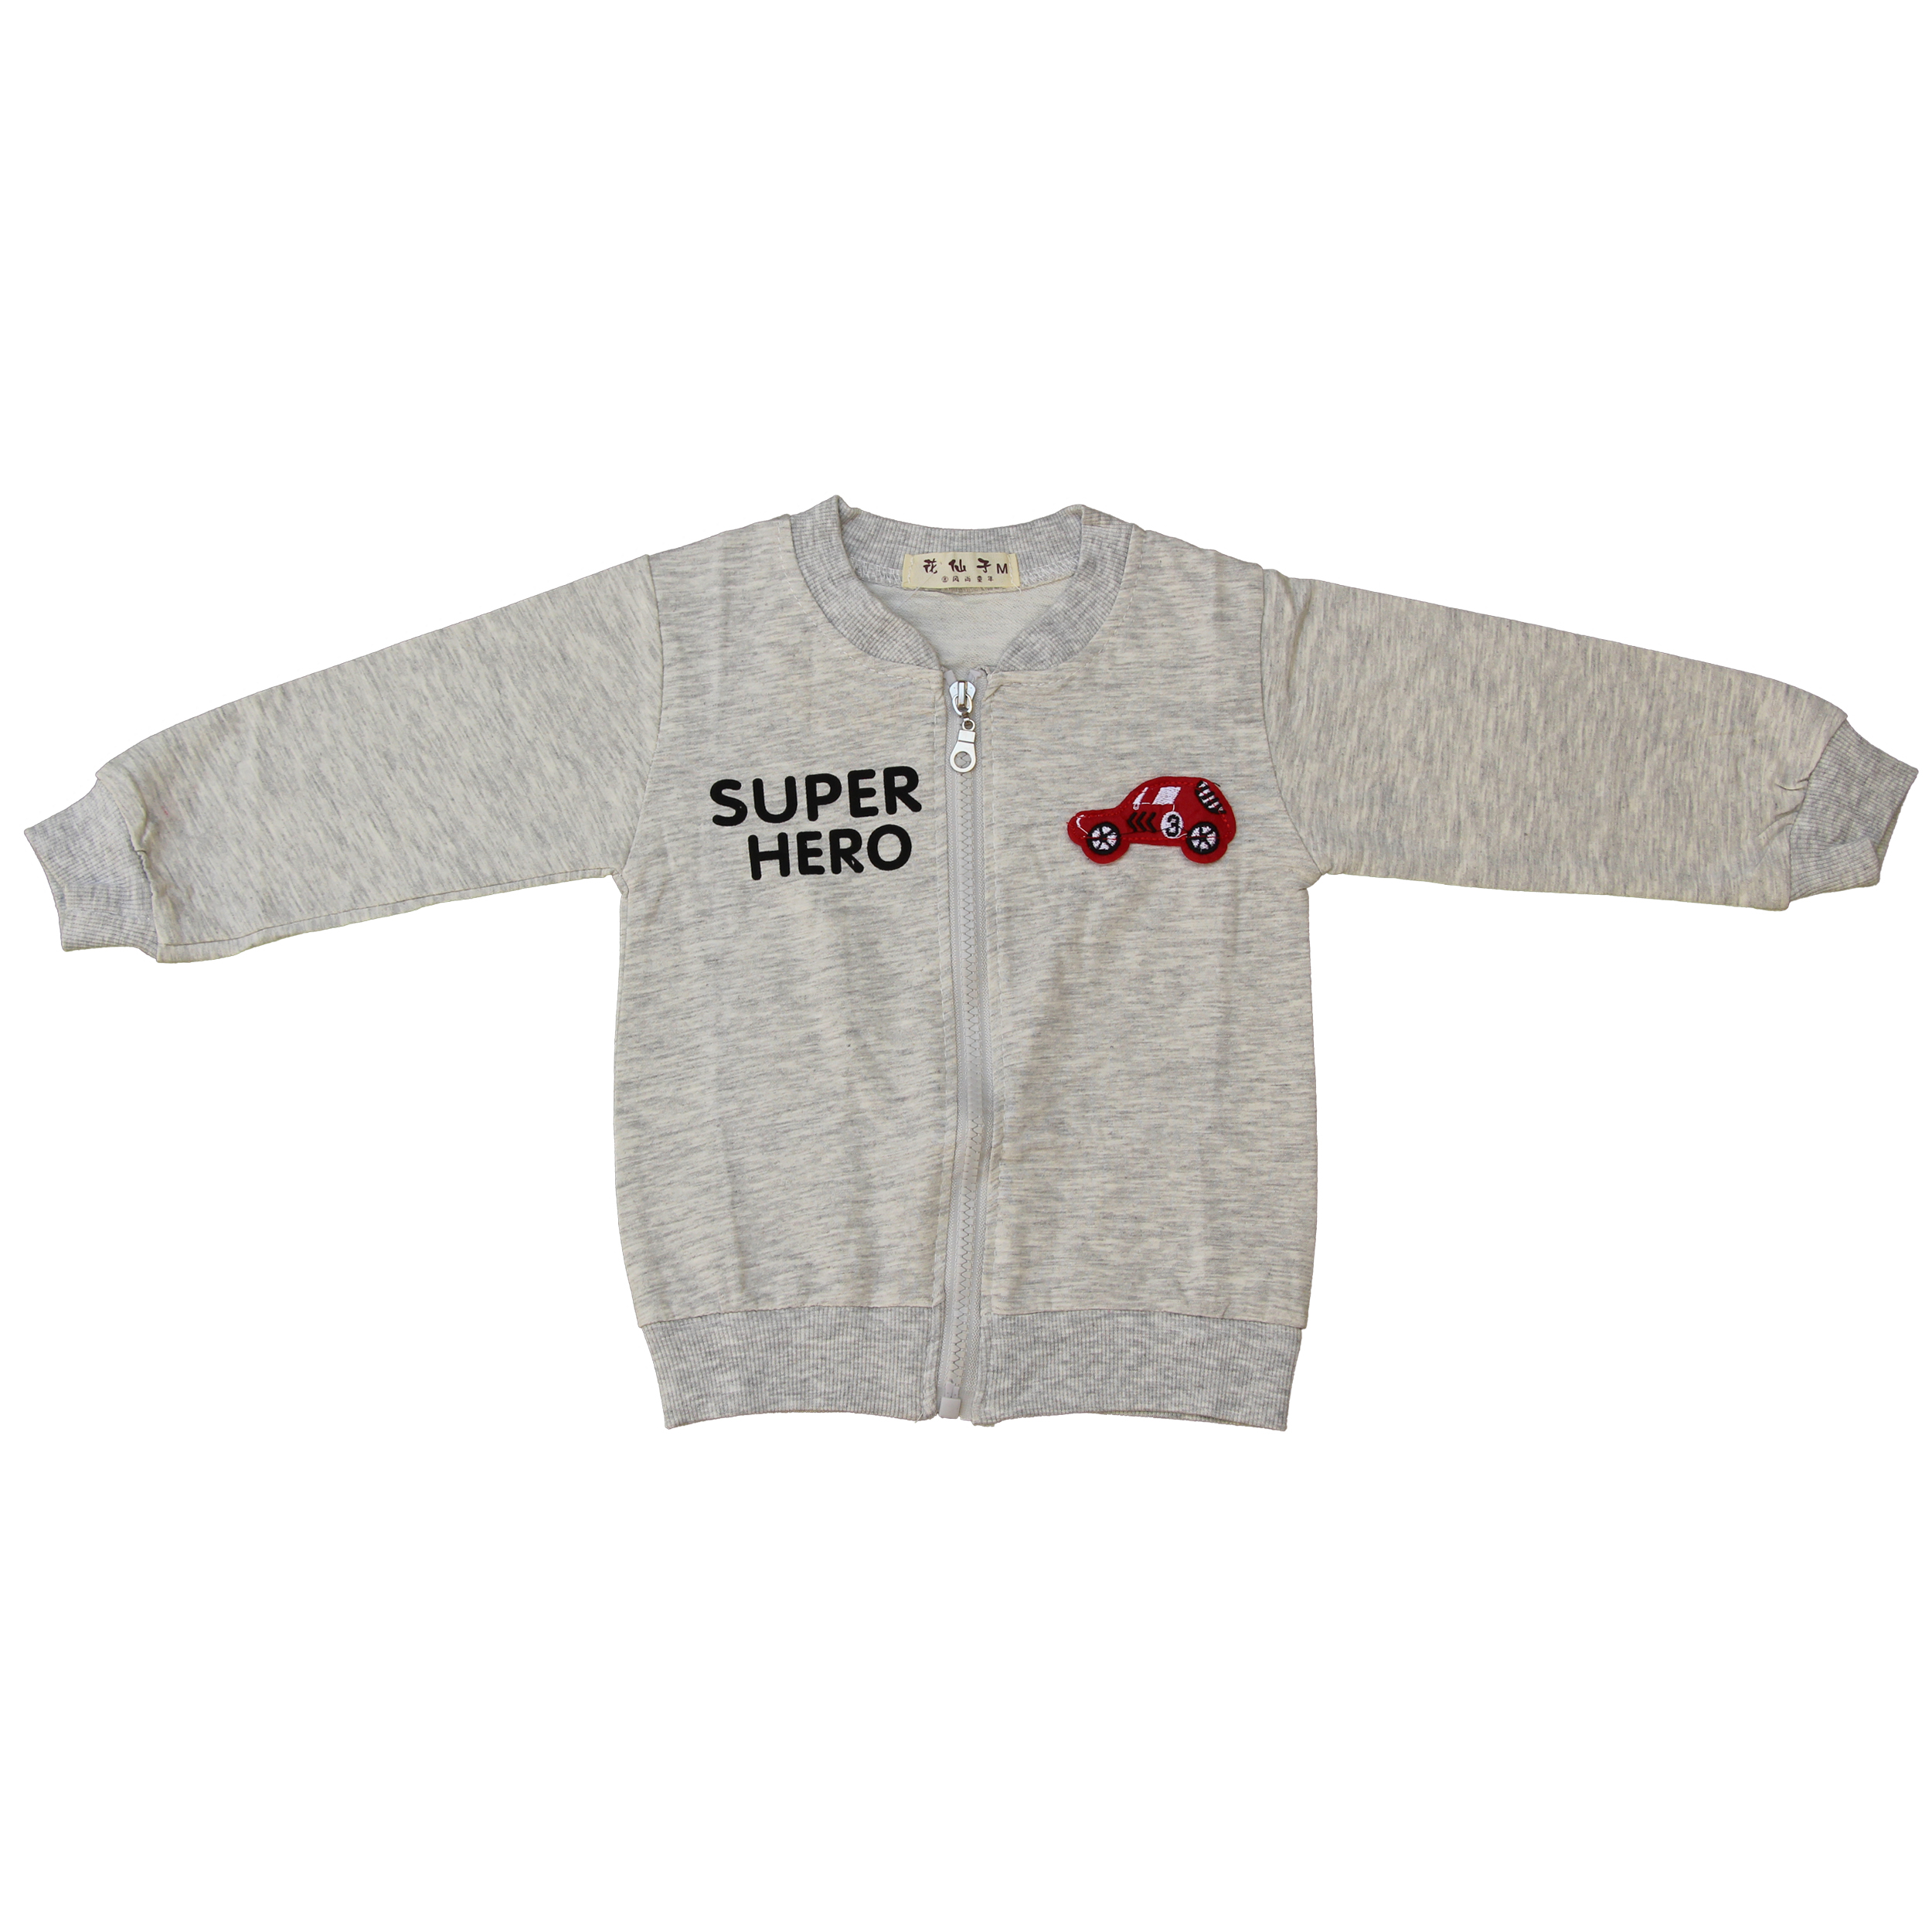 سویشرت بچگانه مدل super hero کد g32